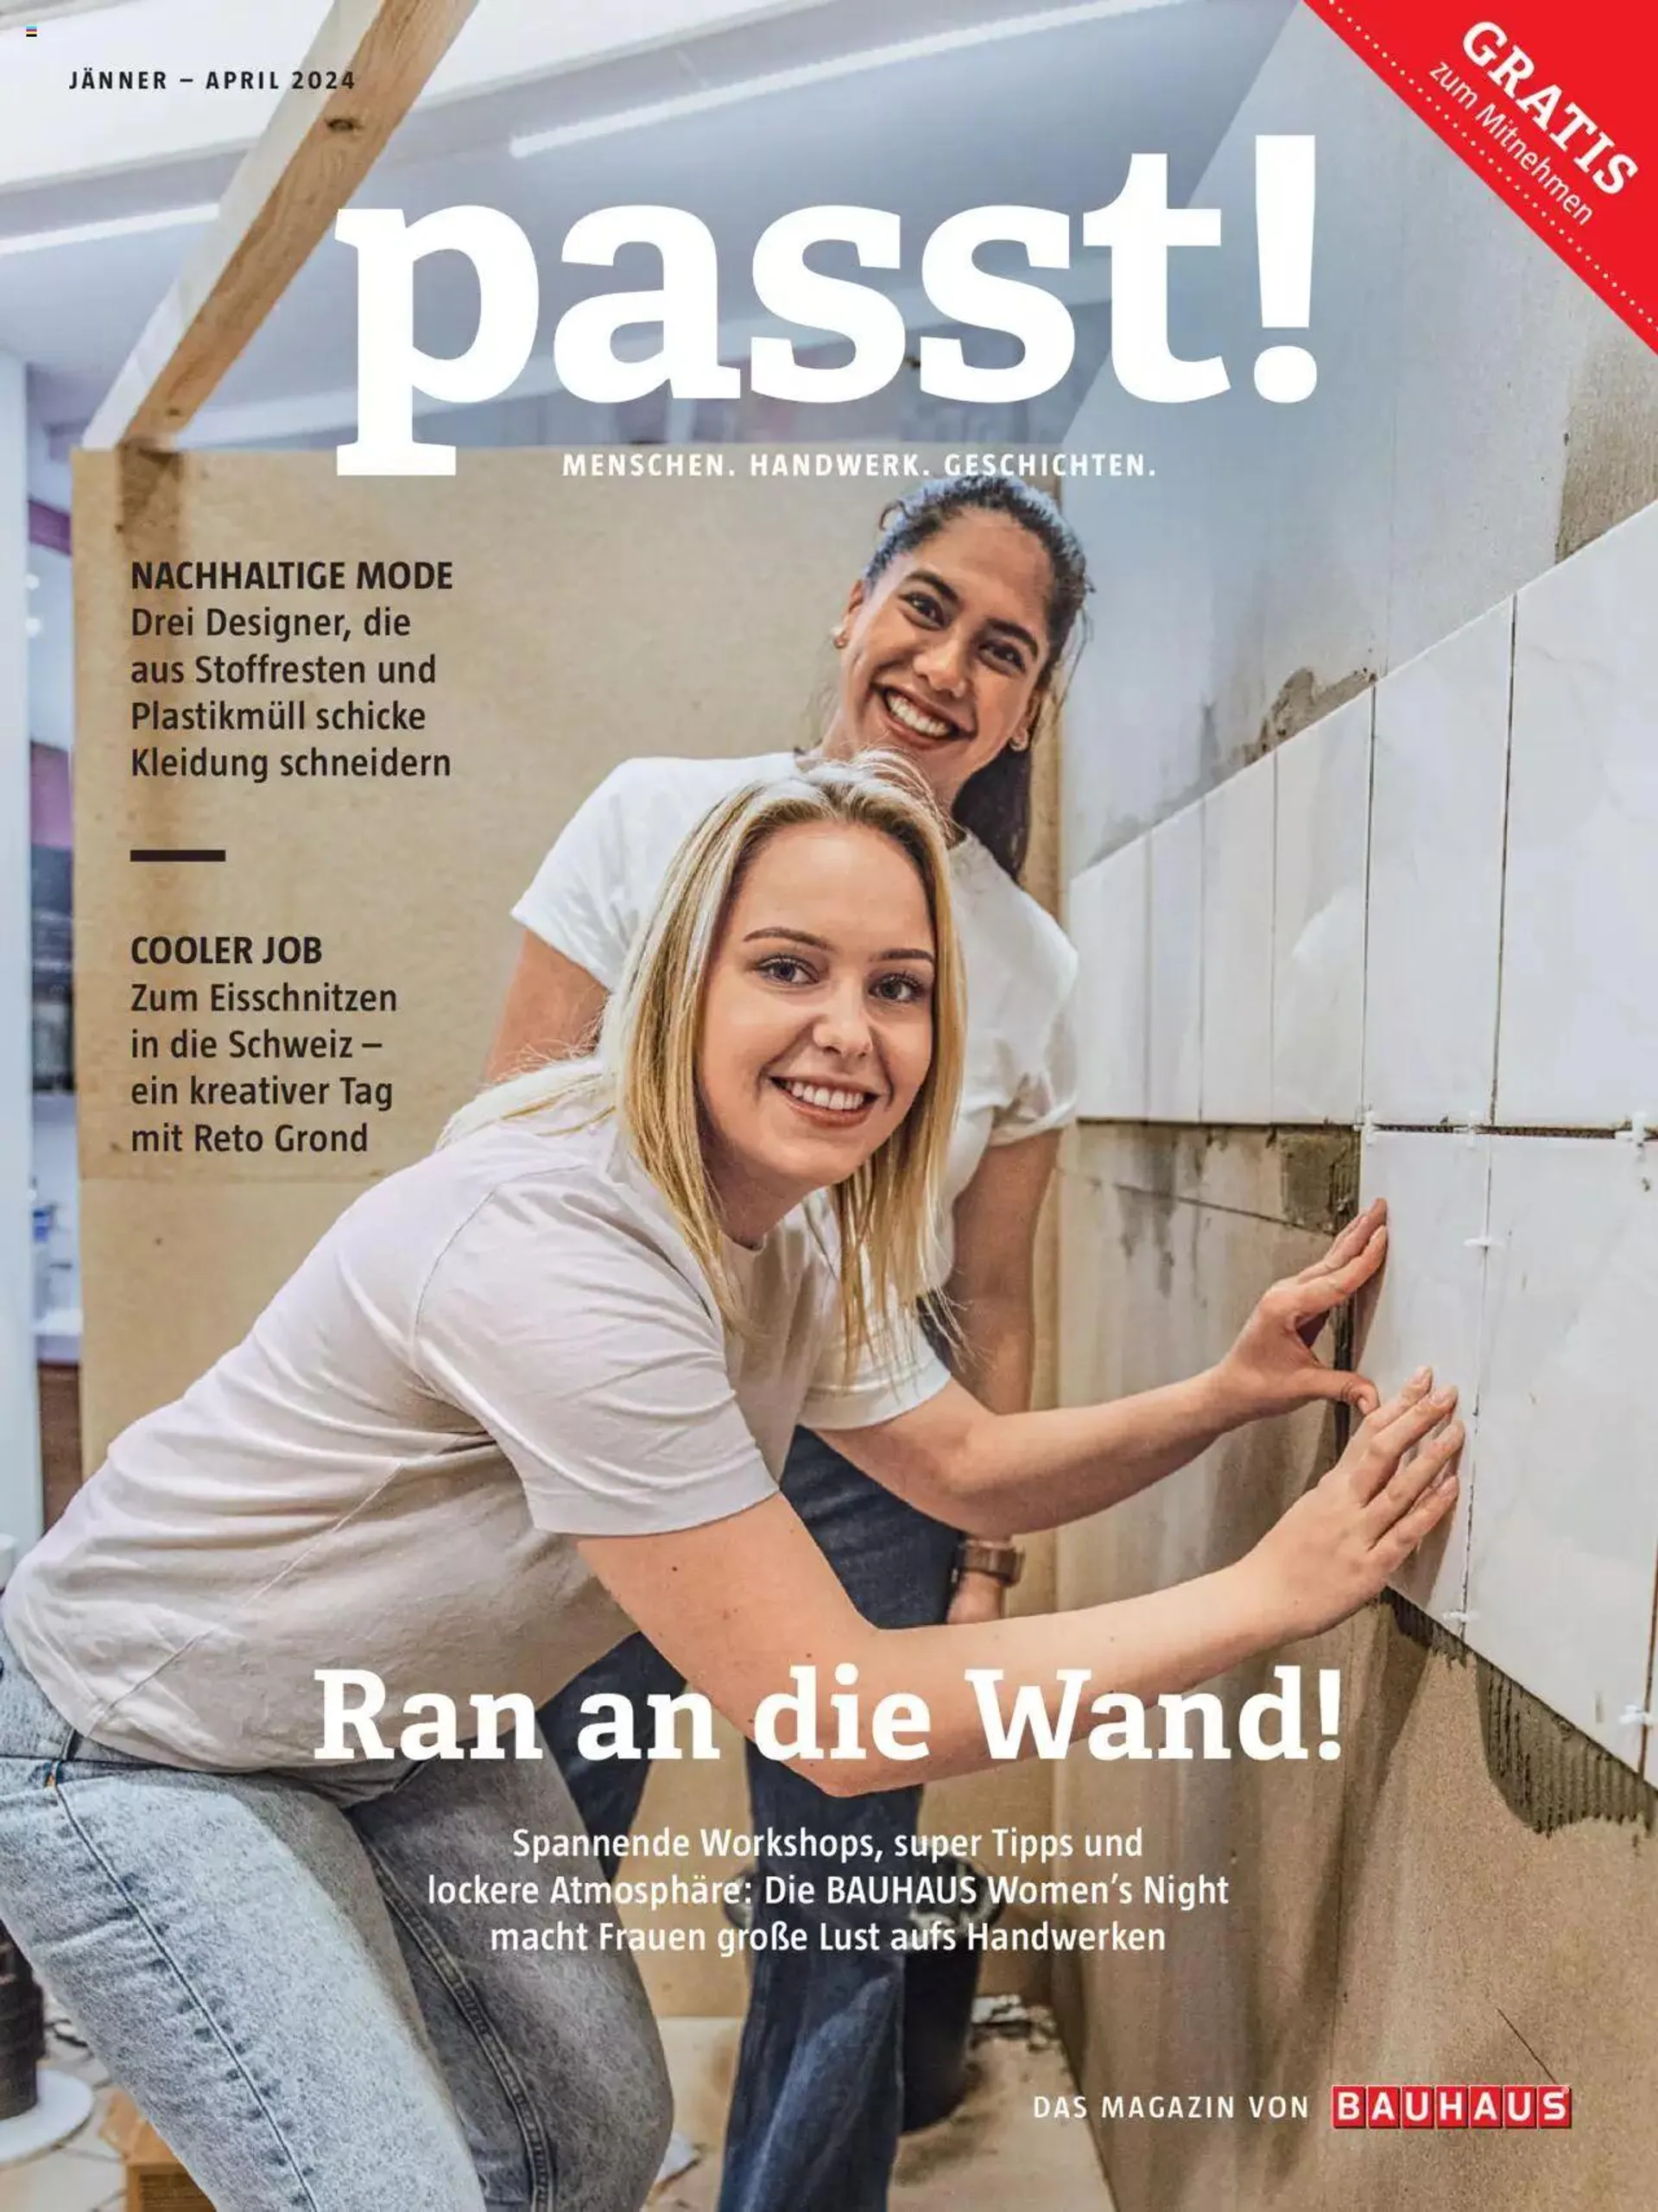 Bauhaus passt! Magazin von 1. Jänner bis 4. April 2024 - Flugblätt seite  